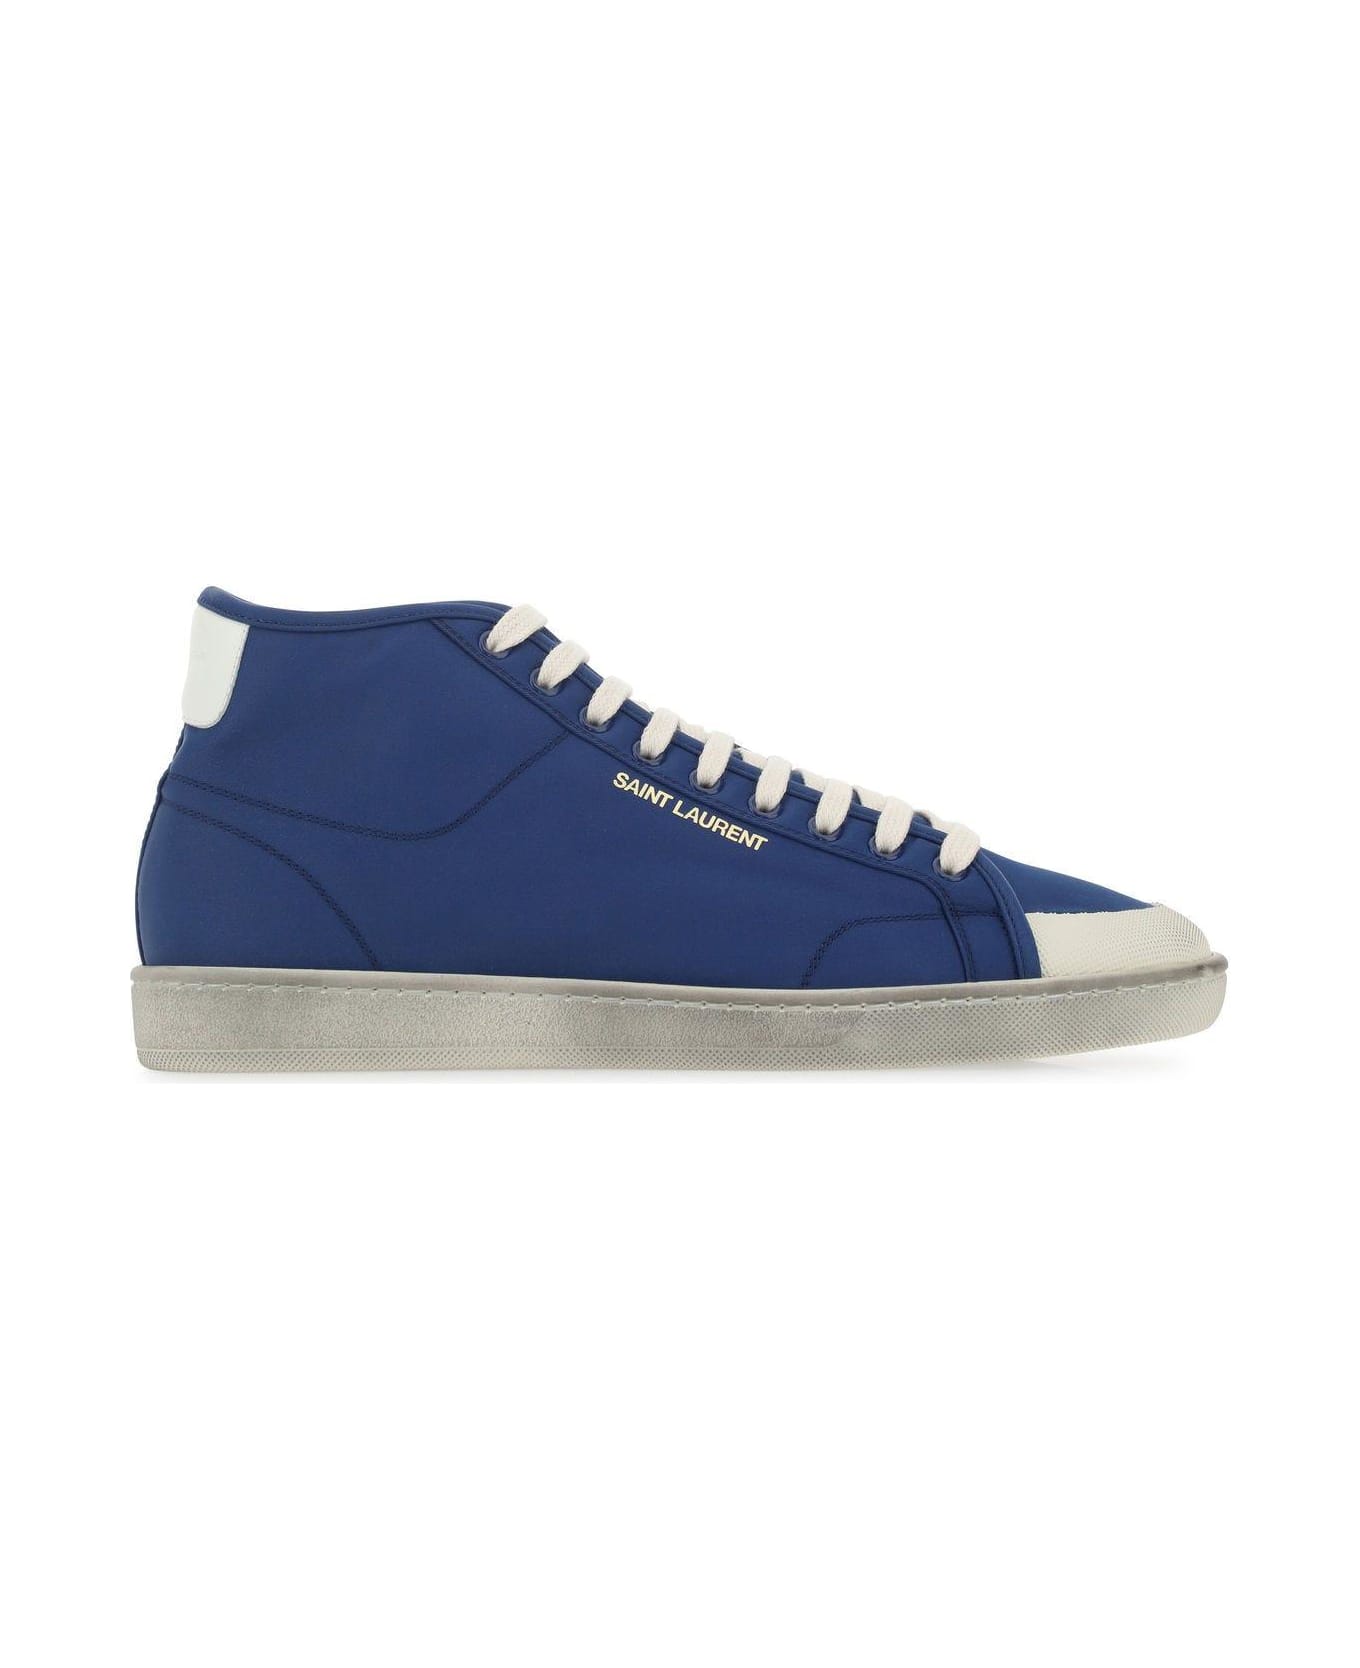 Saint Laurent Blue Nylon Sl/39 Sneakers - Blue